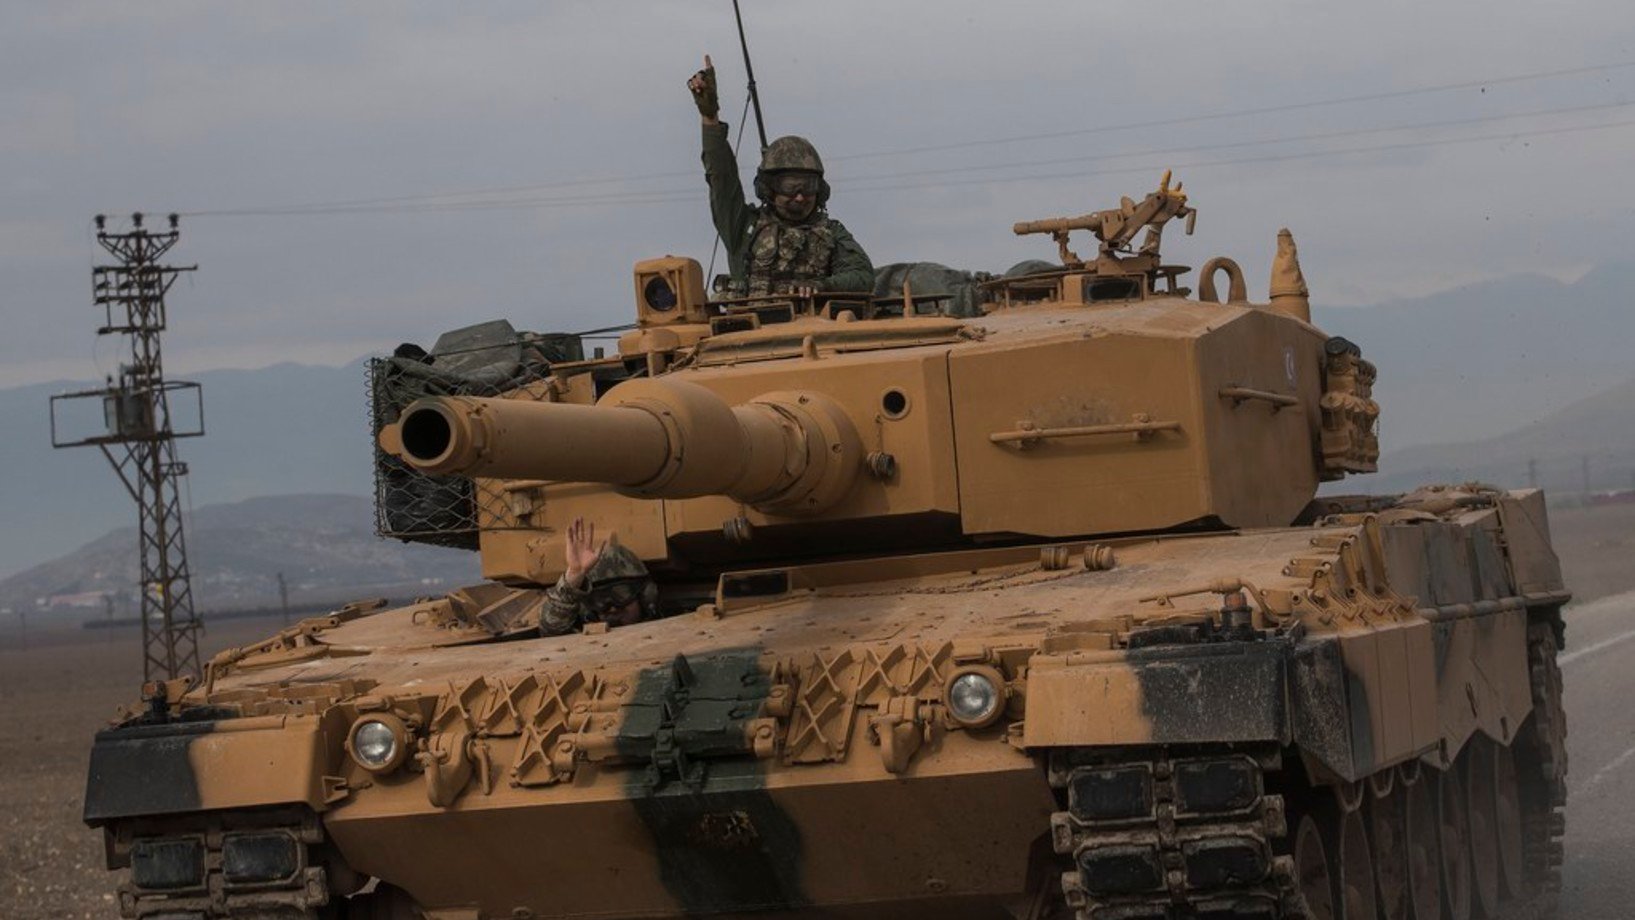 Dutzende türkischer Panzer haben eine Grossoffensive gegen kurdische Einheiten in der syrischen Provinz Afrin begonnen. Das Bild stammt vom Sonntag. (Foto: Keystone/EPA/Sedat Suna)